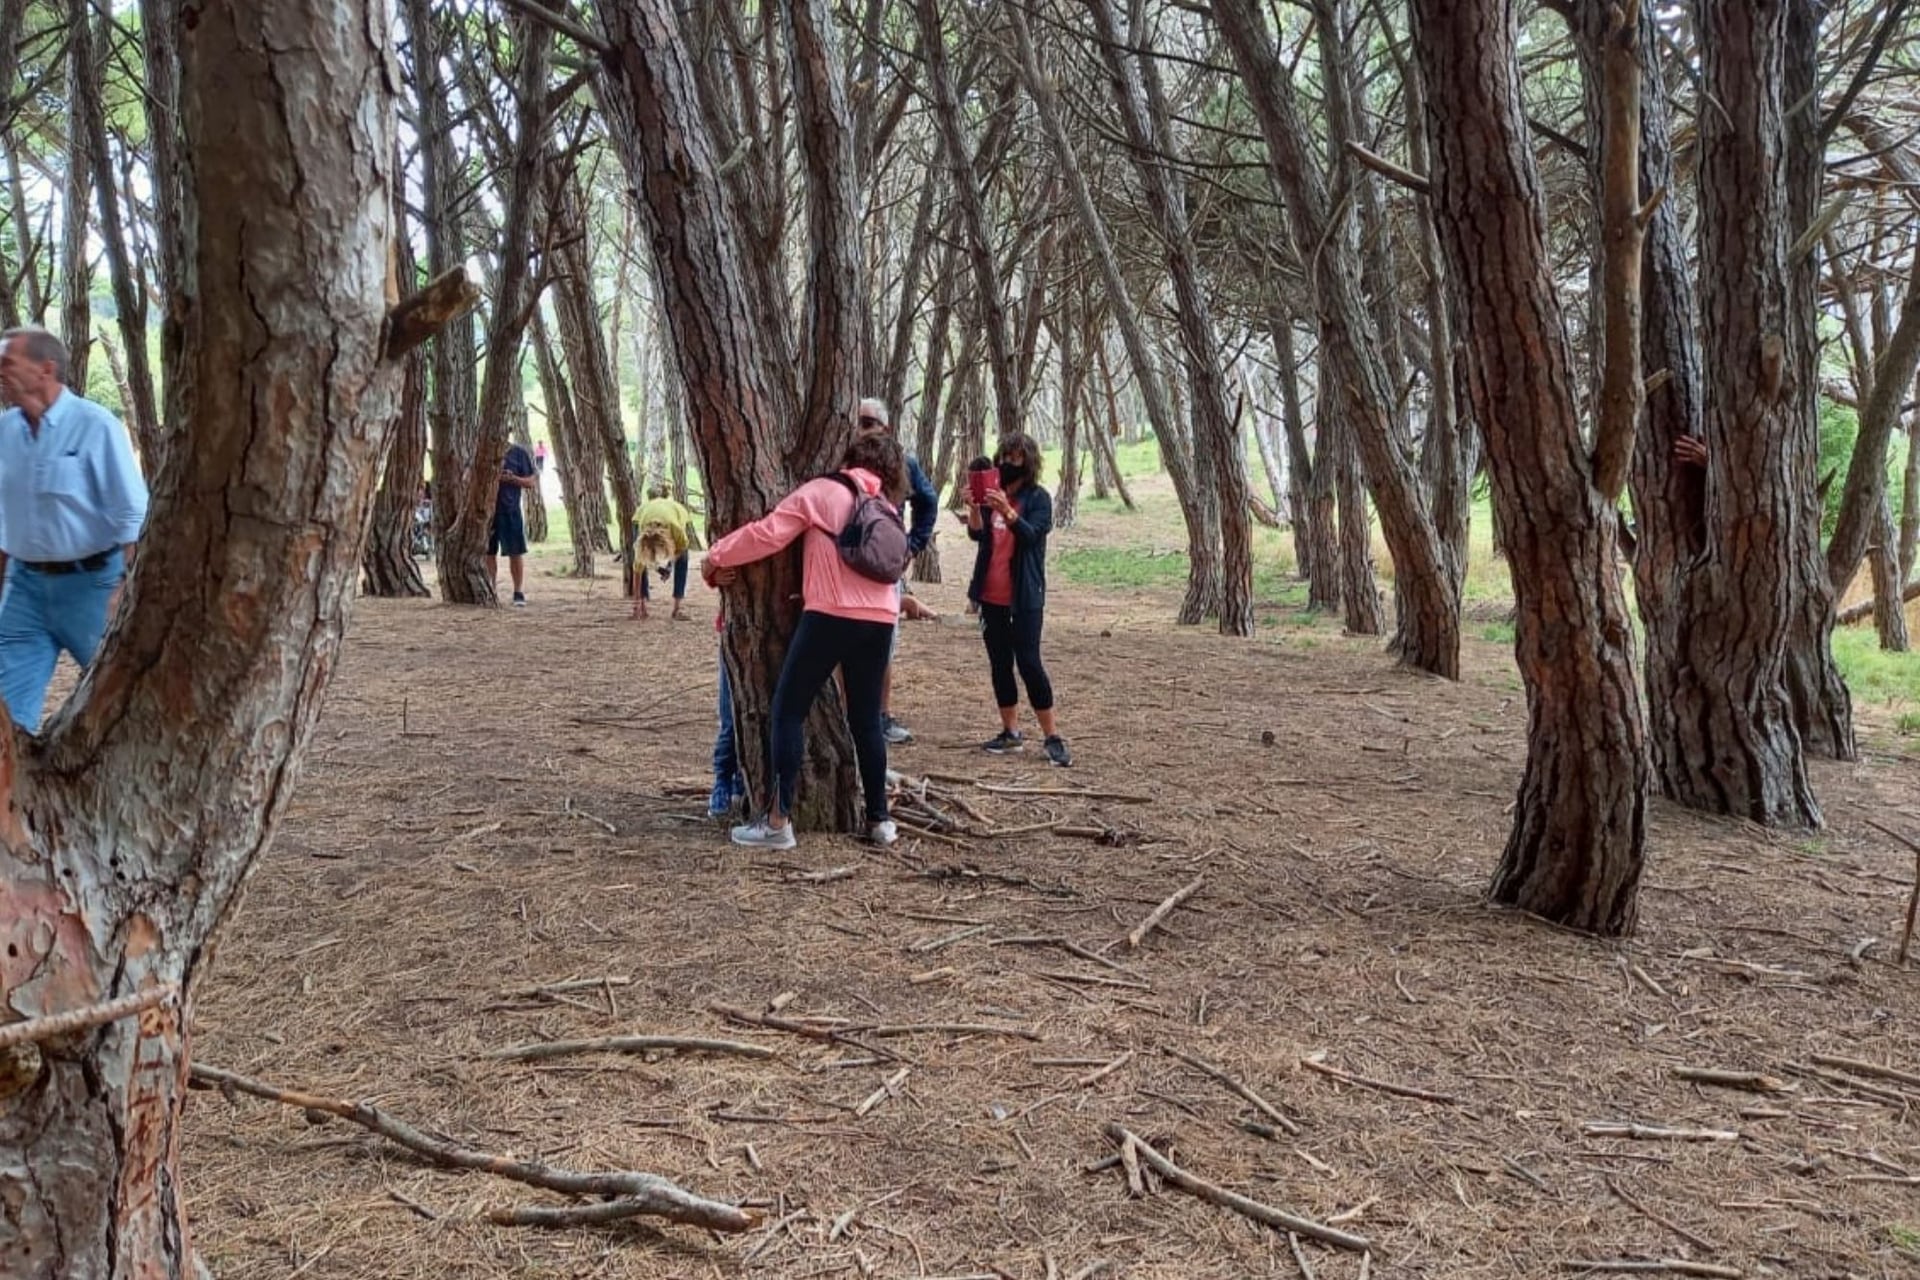 Abrazos a los árboles en el Bosque Energético de Miramar, una actividad muy común entre los visitantes.